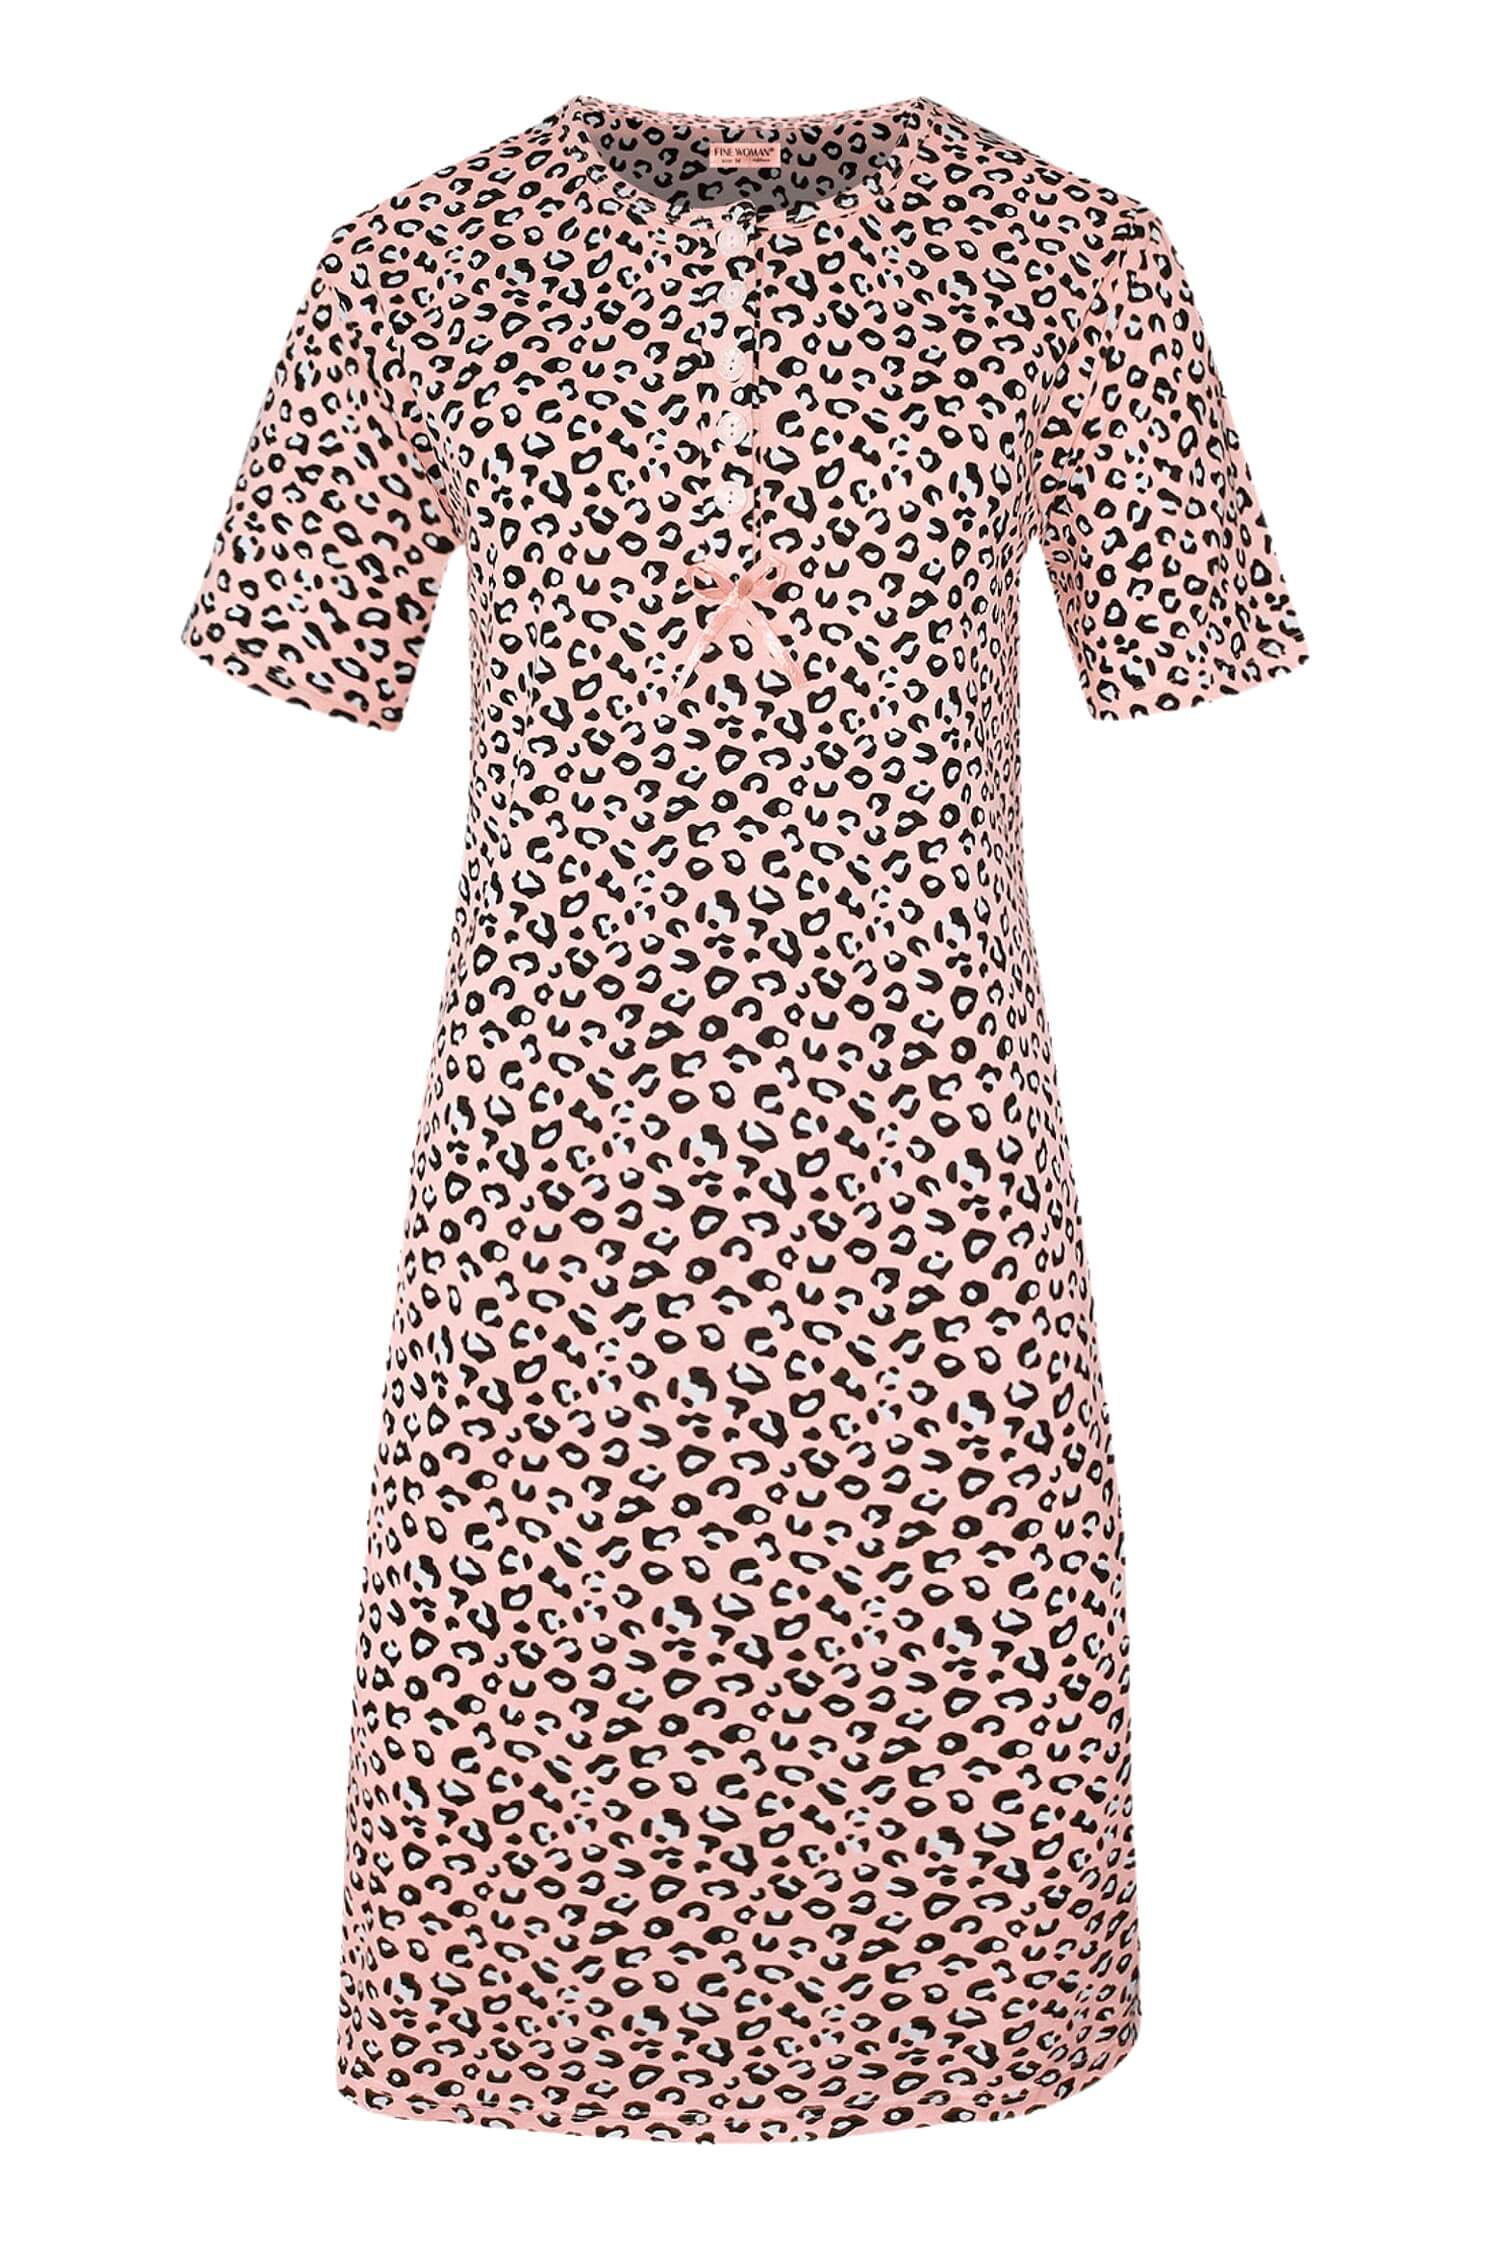 Katarina dámská noční košile leopardí vzor 6529 L světle růžová